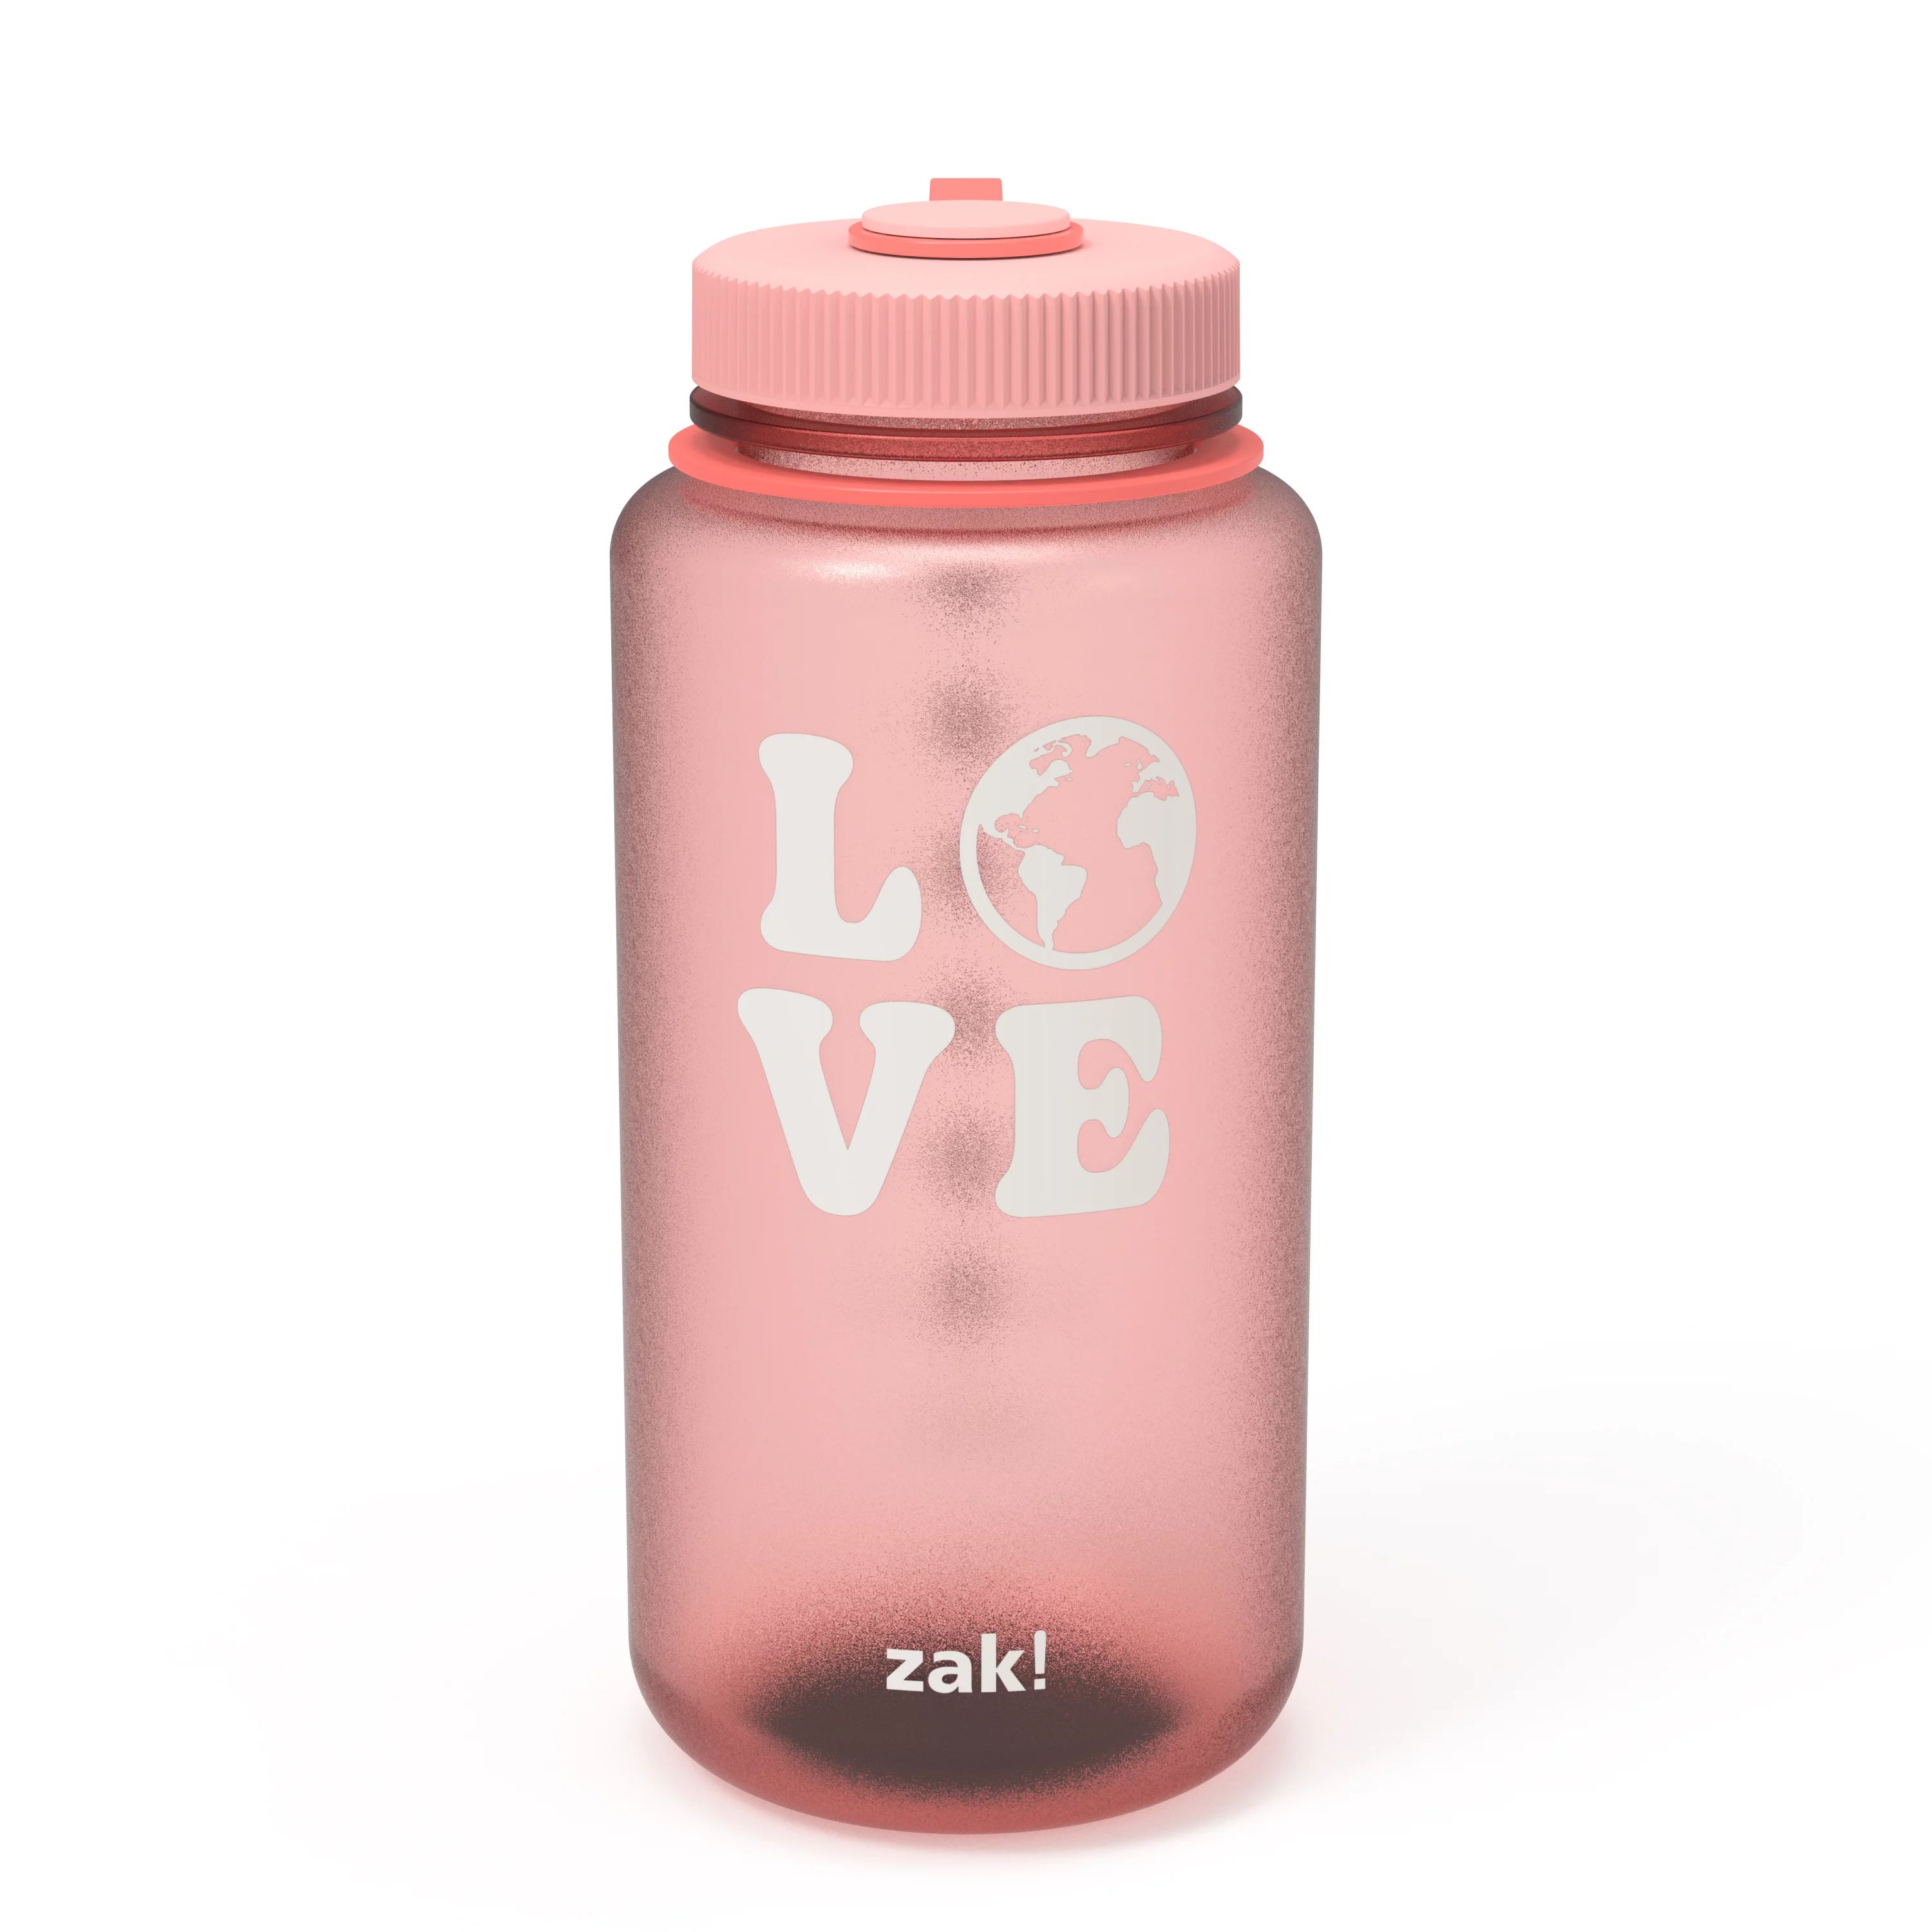 Zak Designs 32 Fluid Ounce Comet Bottle, Coral | Walmart (US)